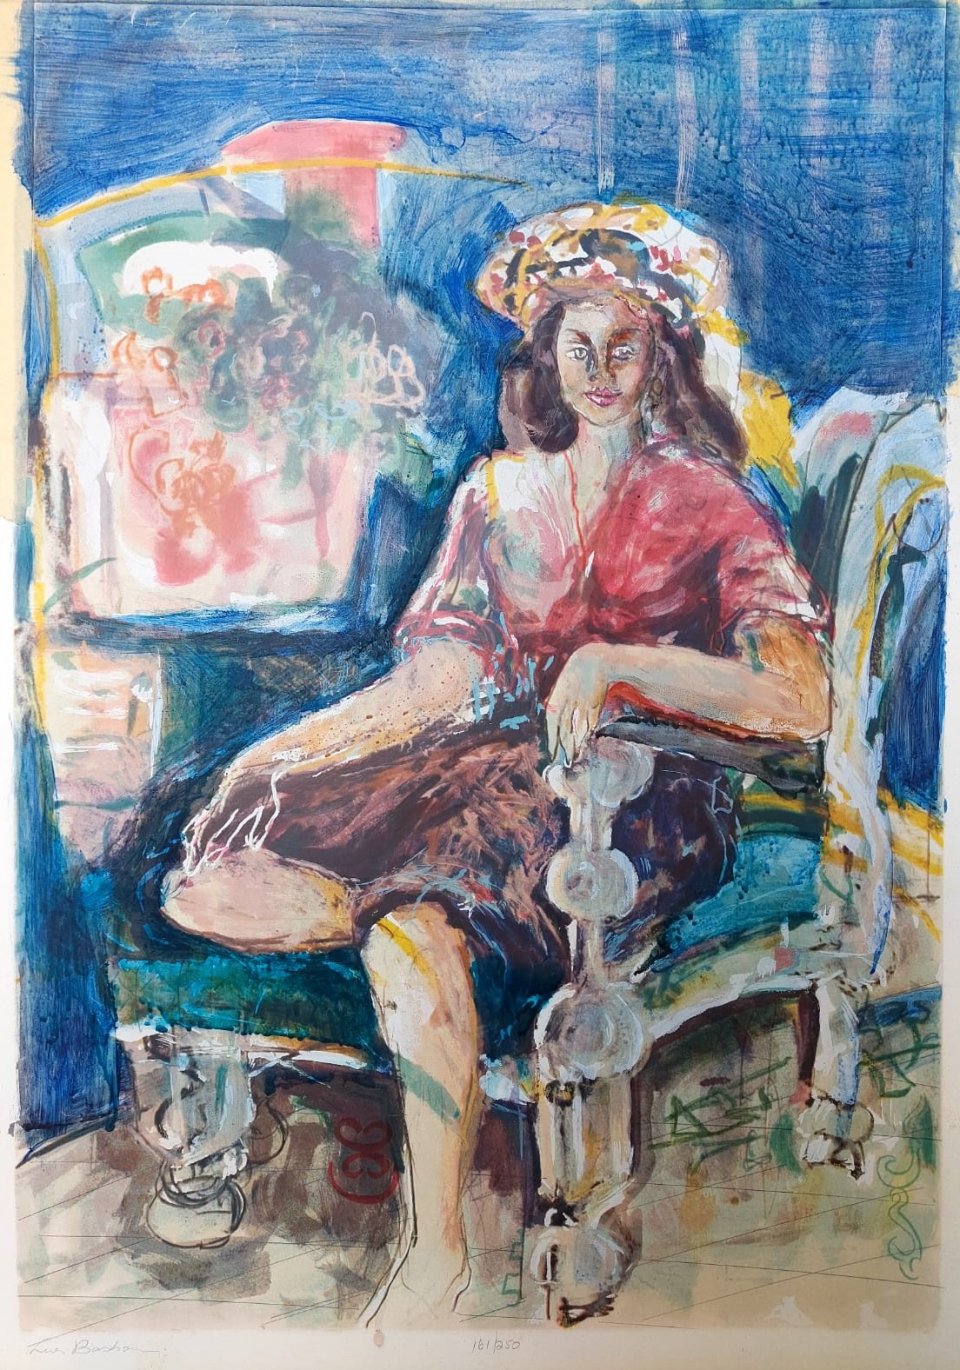 אישה יושבת על כורסא על רקע כחול